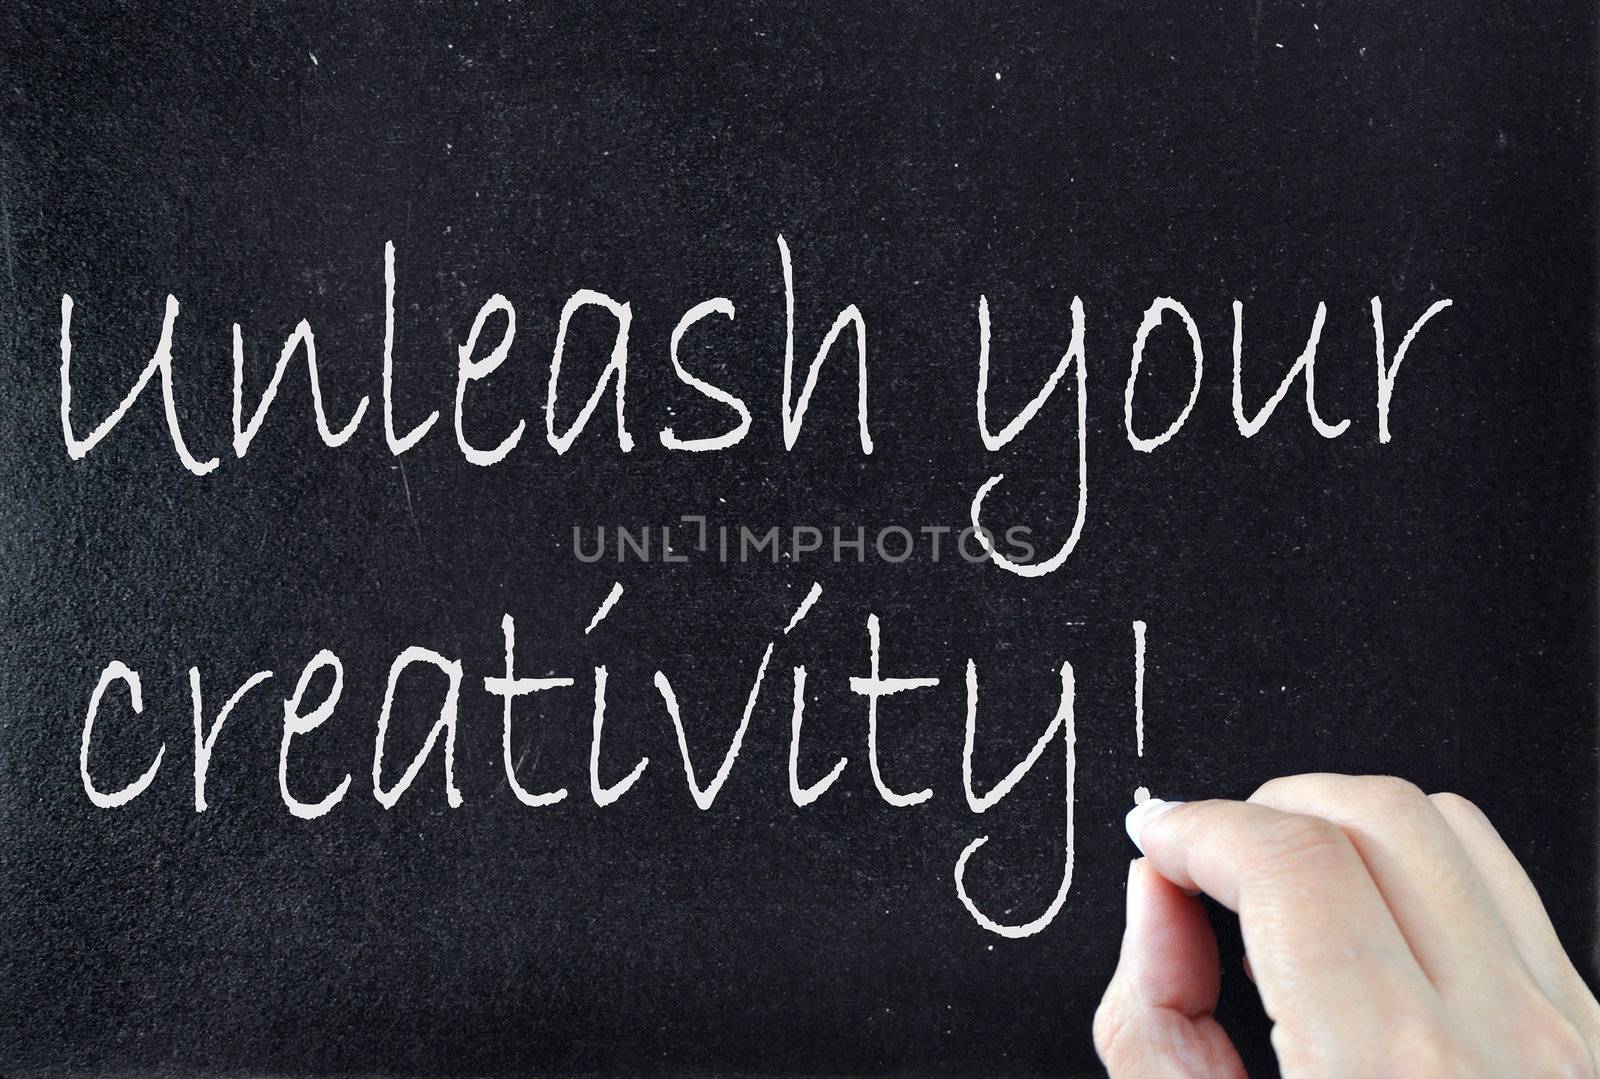 Unleash your creativity handwritten on a blackboard 